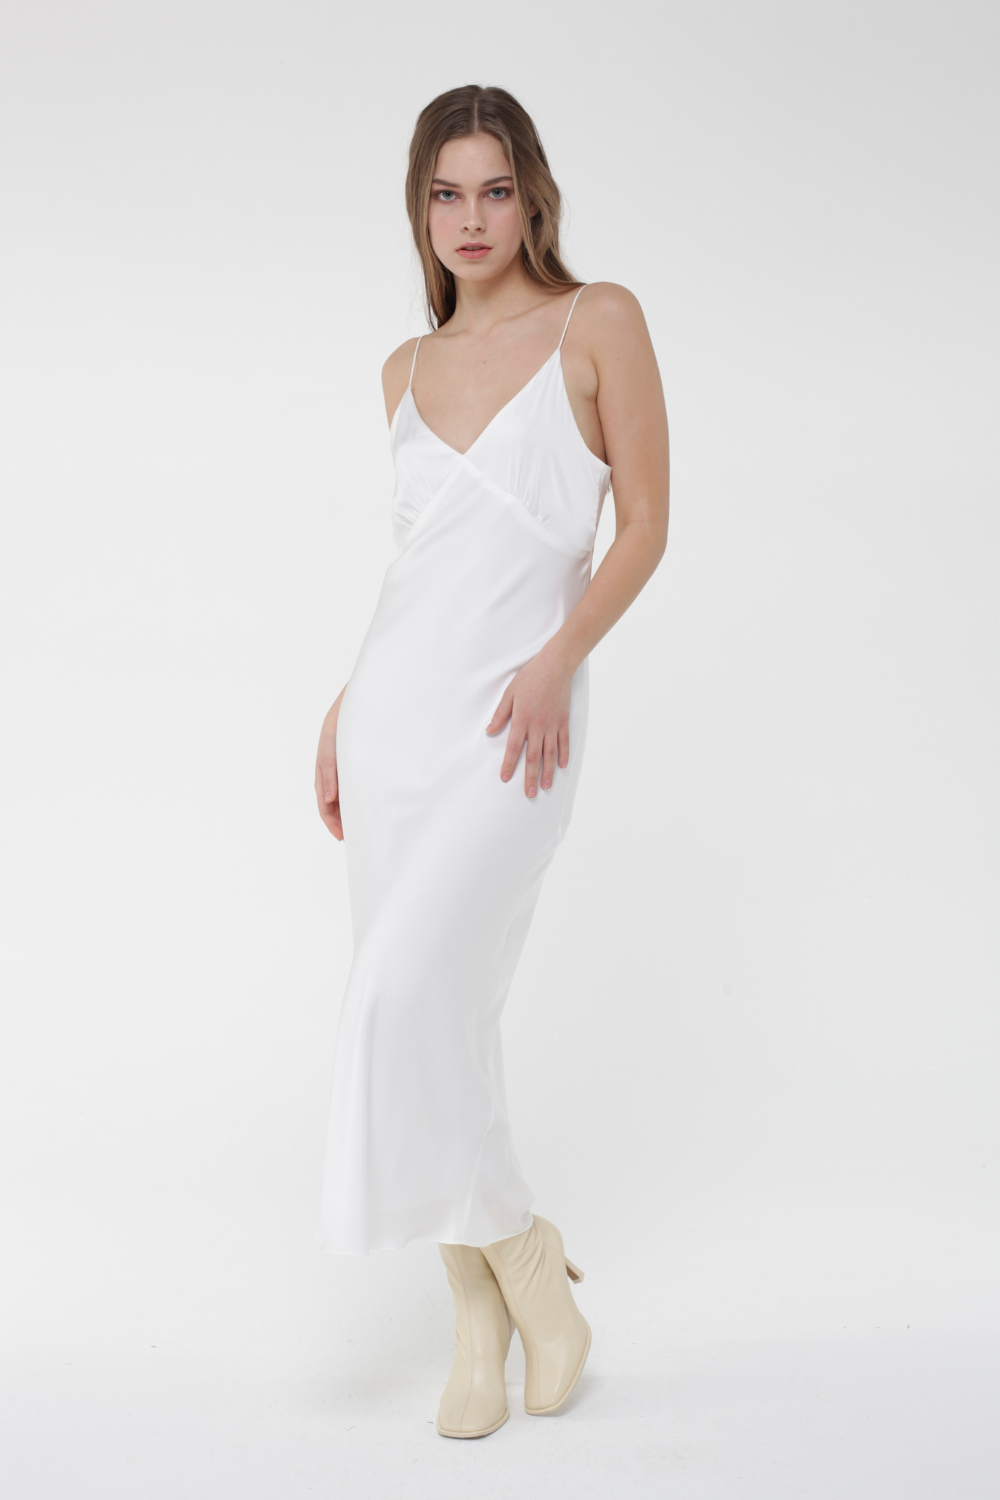 Šaty kombinace s šálkem na tenkých žiletkách, bílá (MissSecret) DR-040-white